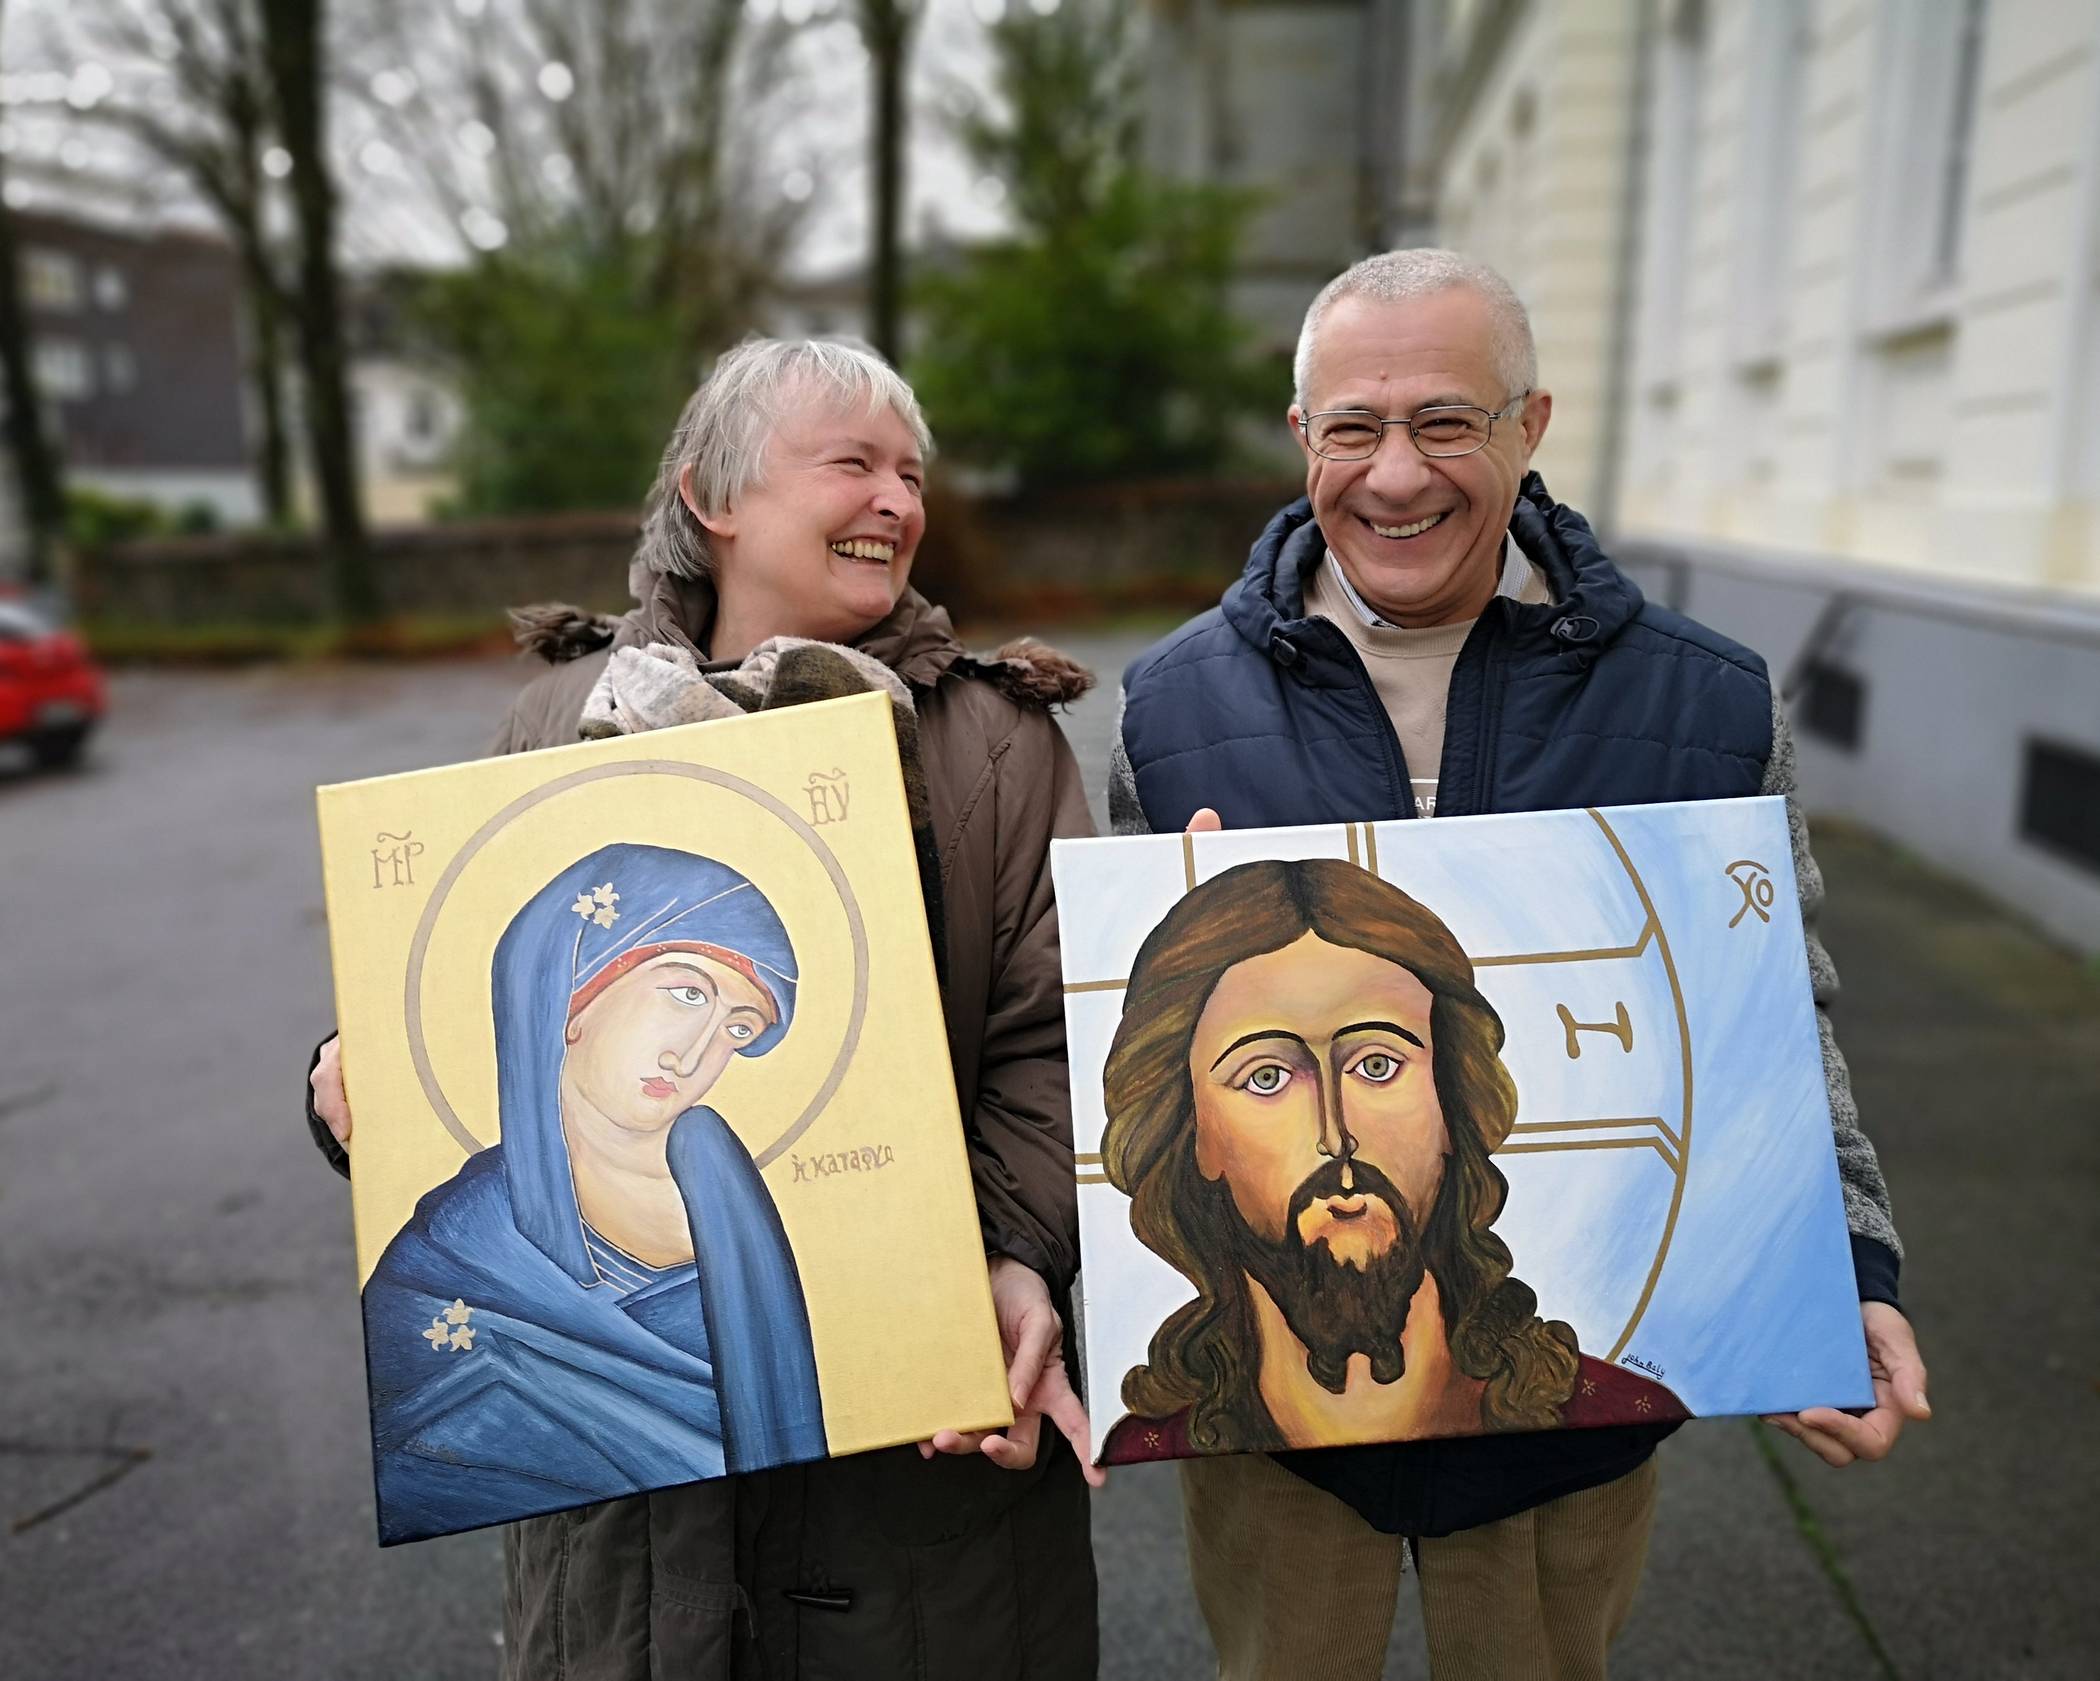  Religionslehrerin Anne Wiechmann und „assistent teacher“ John Baly aus Syrien mit seinen Kunstwerken. 